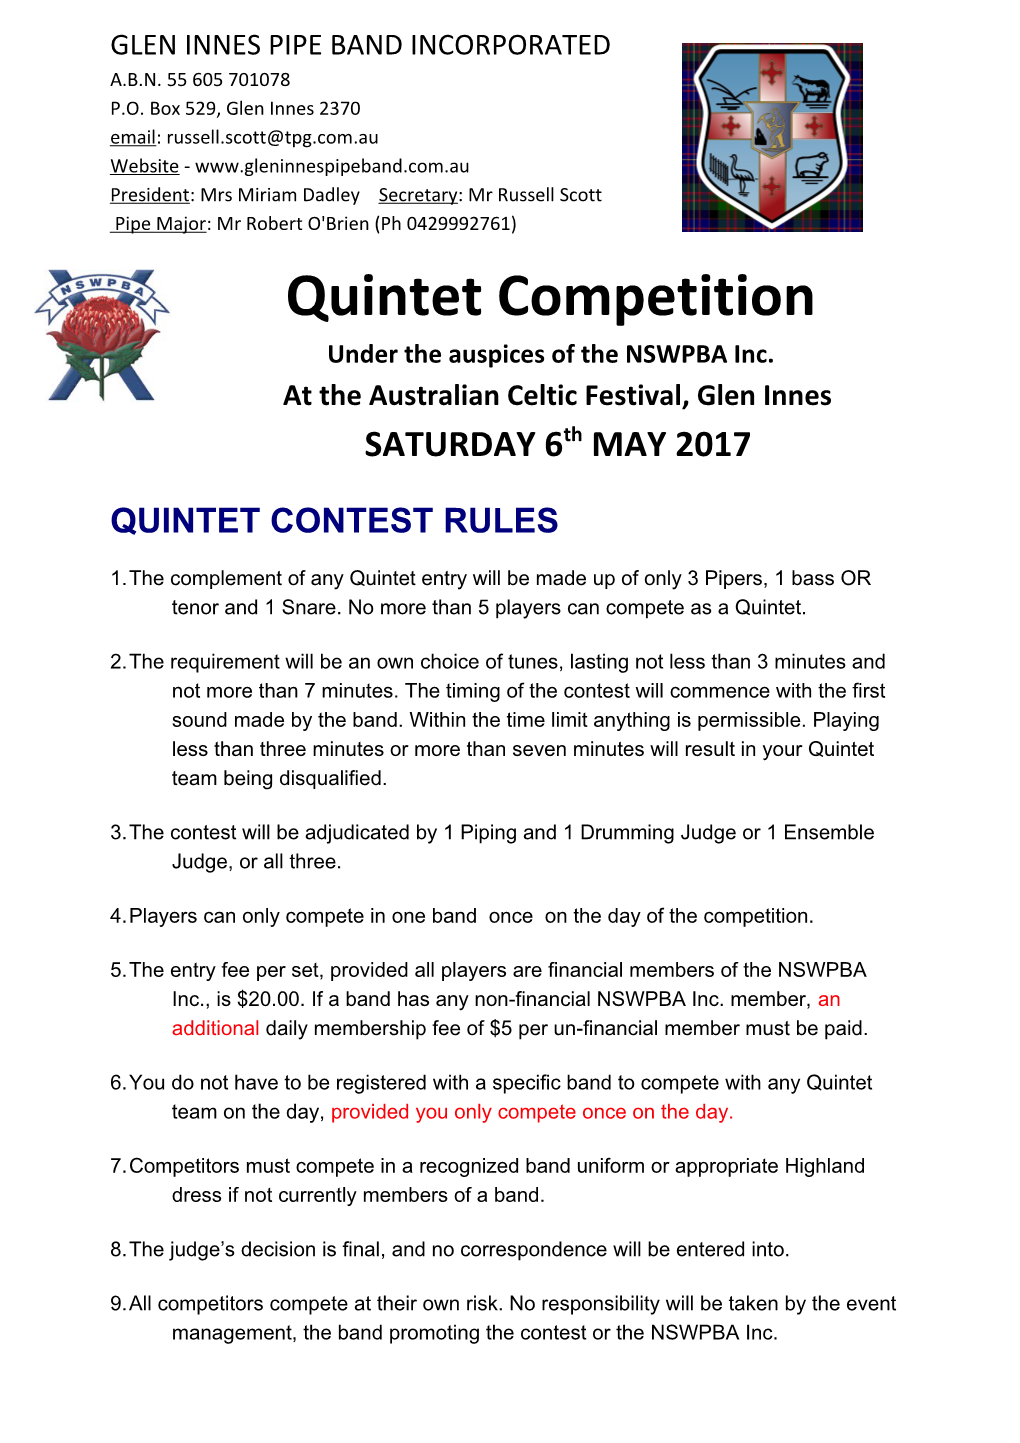 Quintet Contest Rules